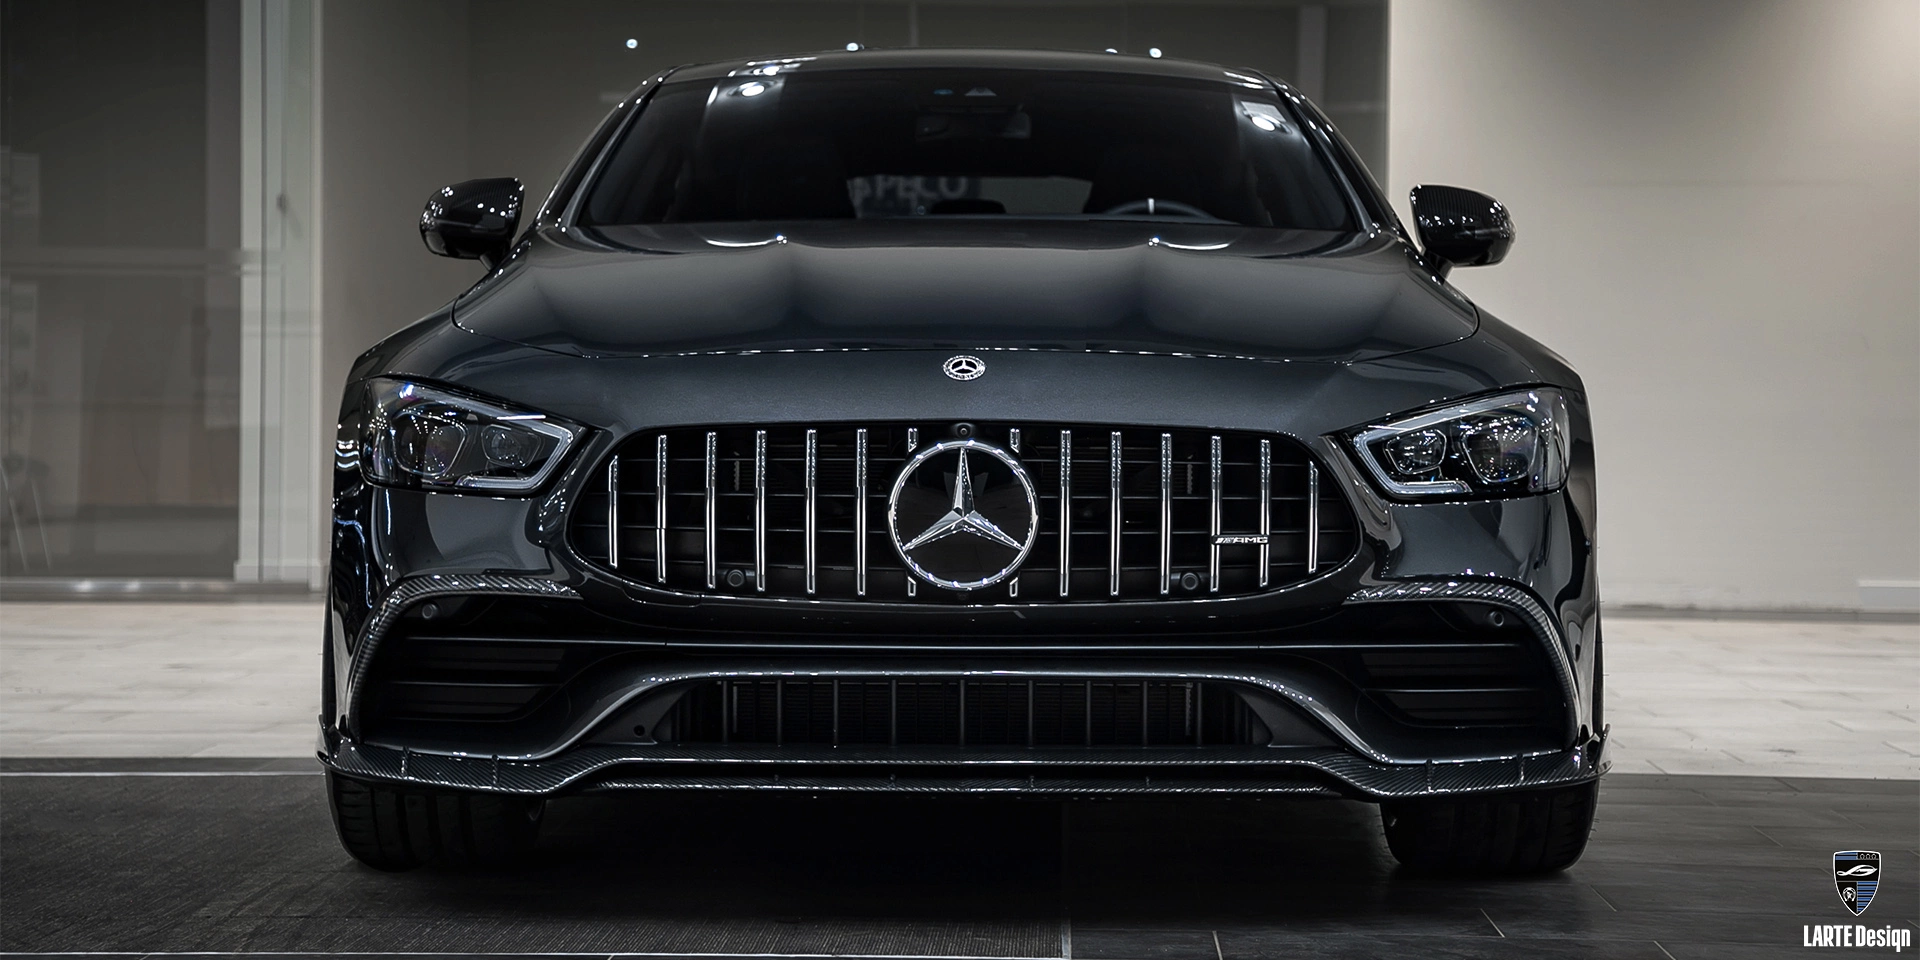 Bestellen Sie Tuning-Kits aus Kohlefaser für Mercedes-AMG GT 43 4MATIC X290 in Obsidianschwarz Metallic 2022